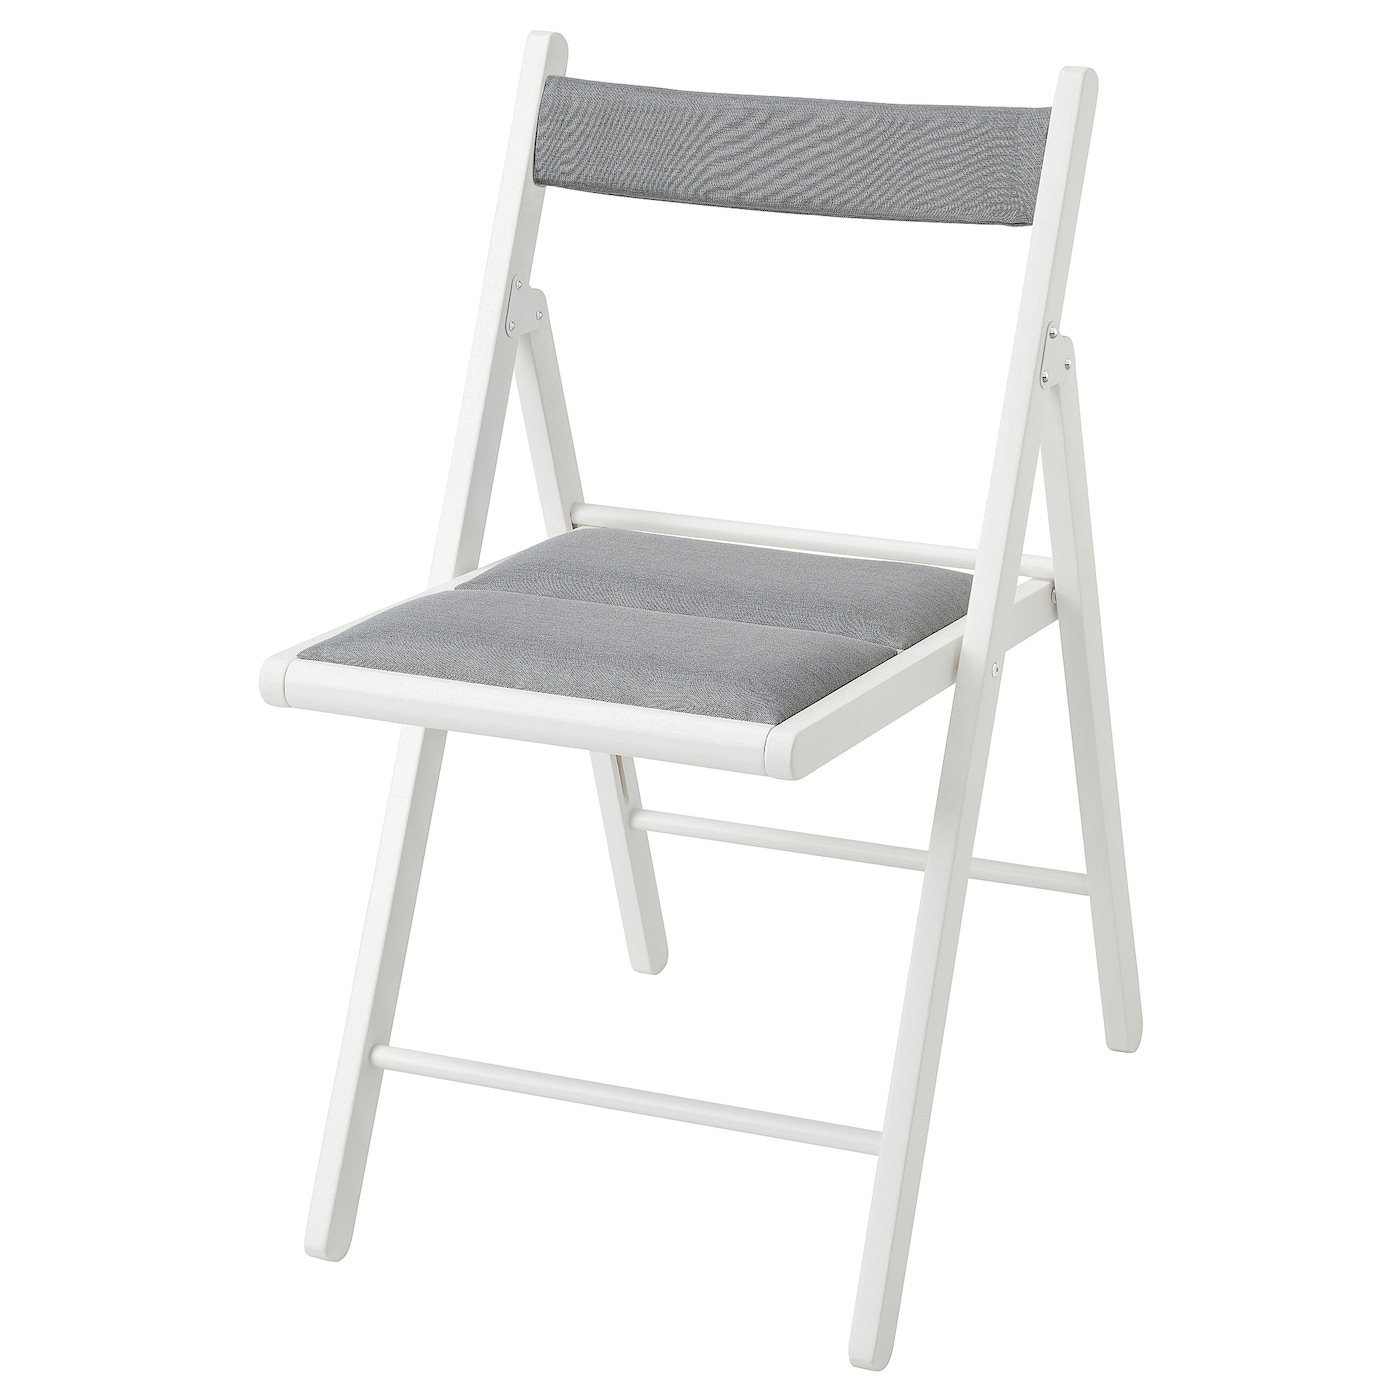 FRÖSVI folding chair white/Knisa light grey - IKEA